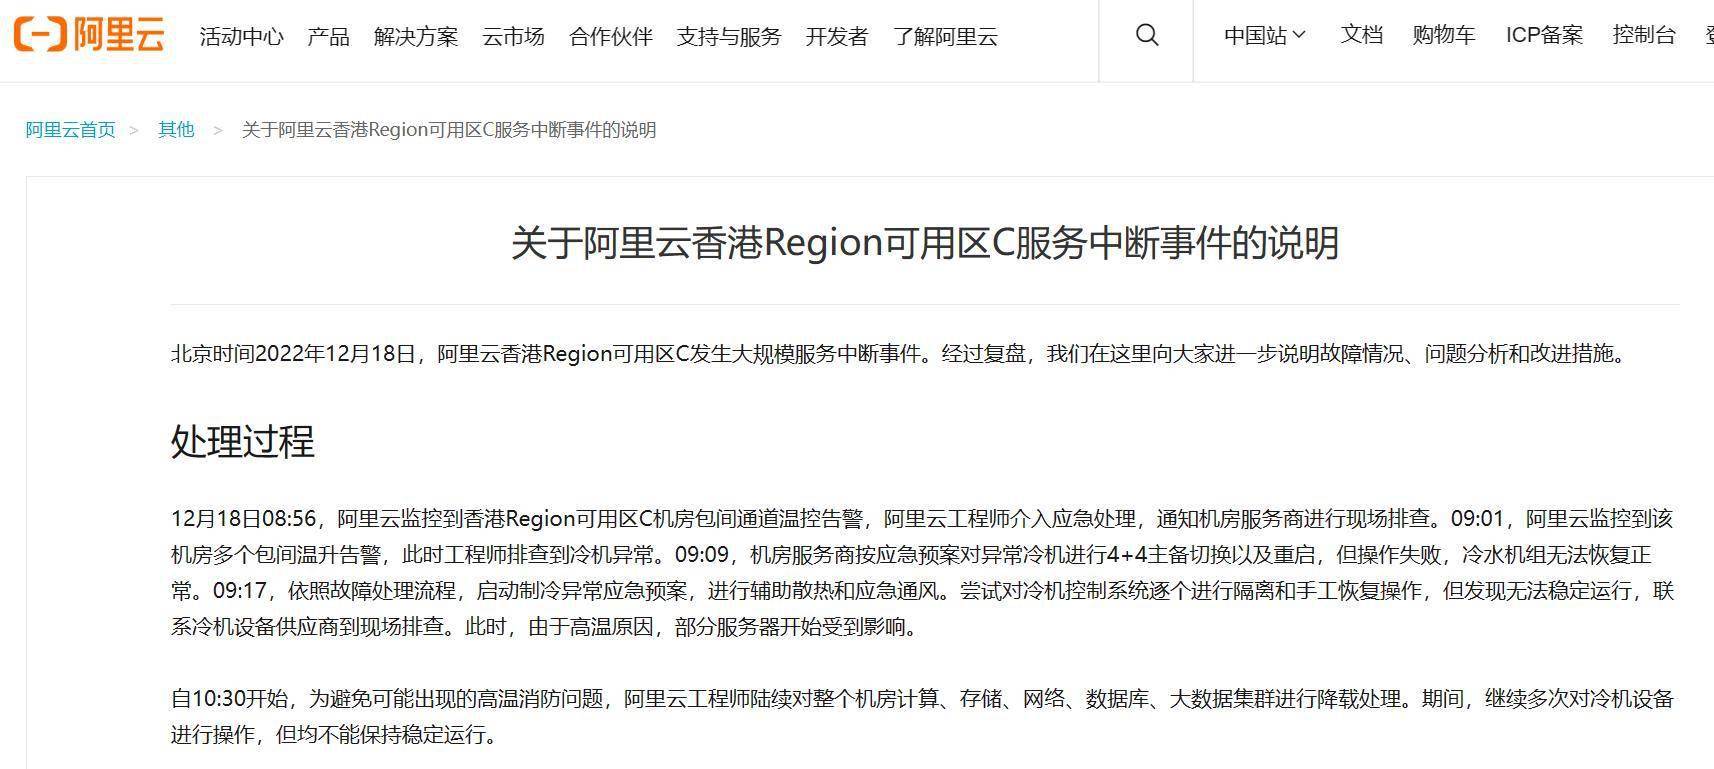 阿里云发布香港可用区C办事中断事务申明，称将尽快处置补偿事宜